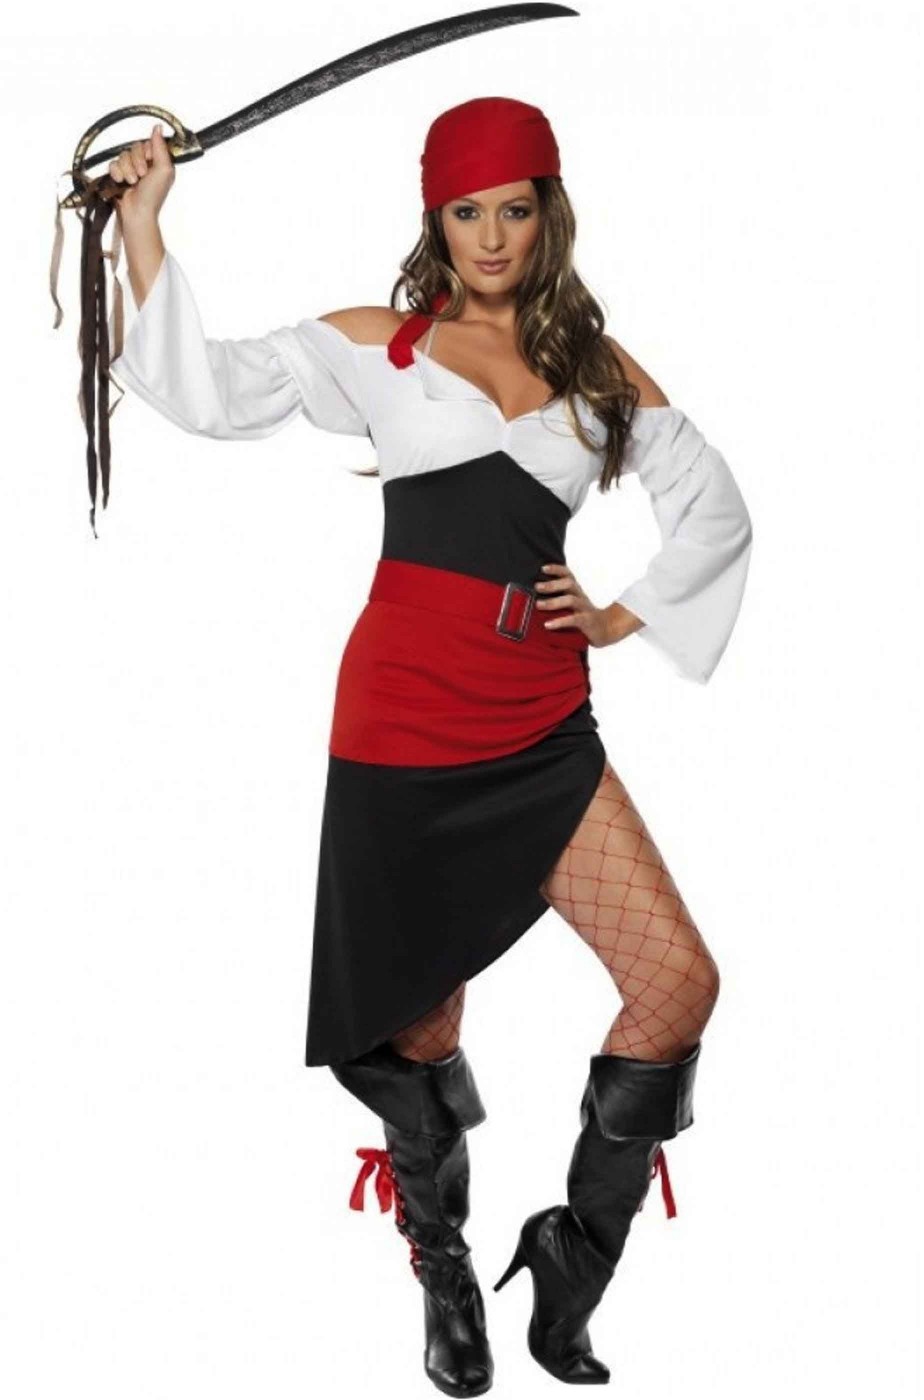 Costume donna pirata piratessa con gonna lunga e spacco